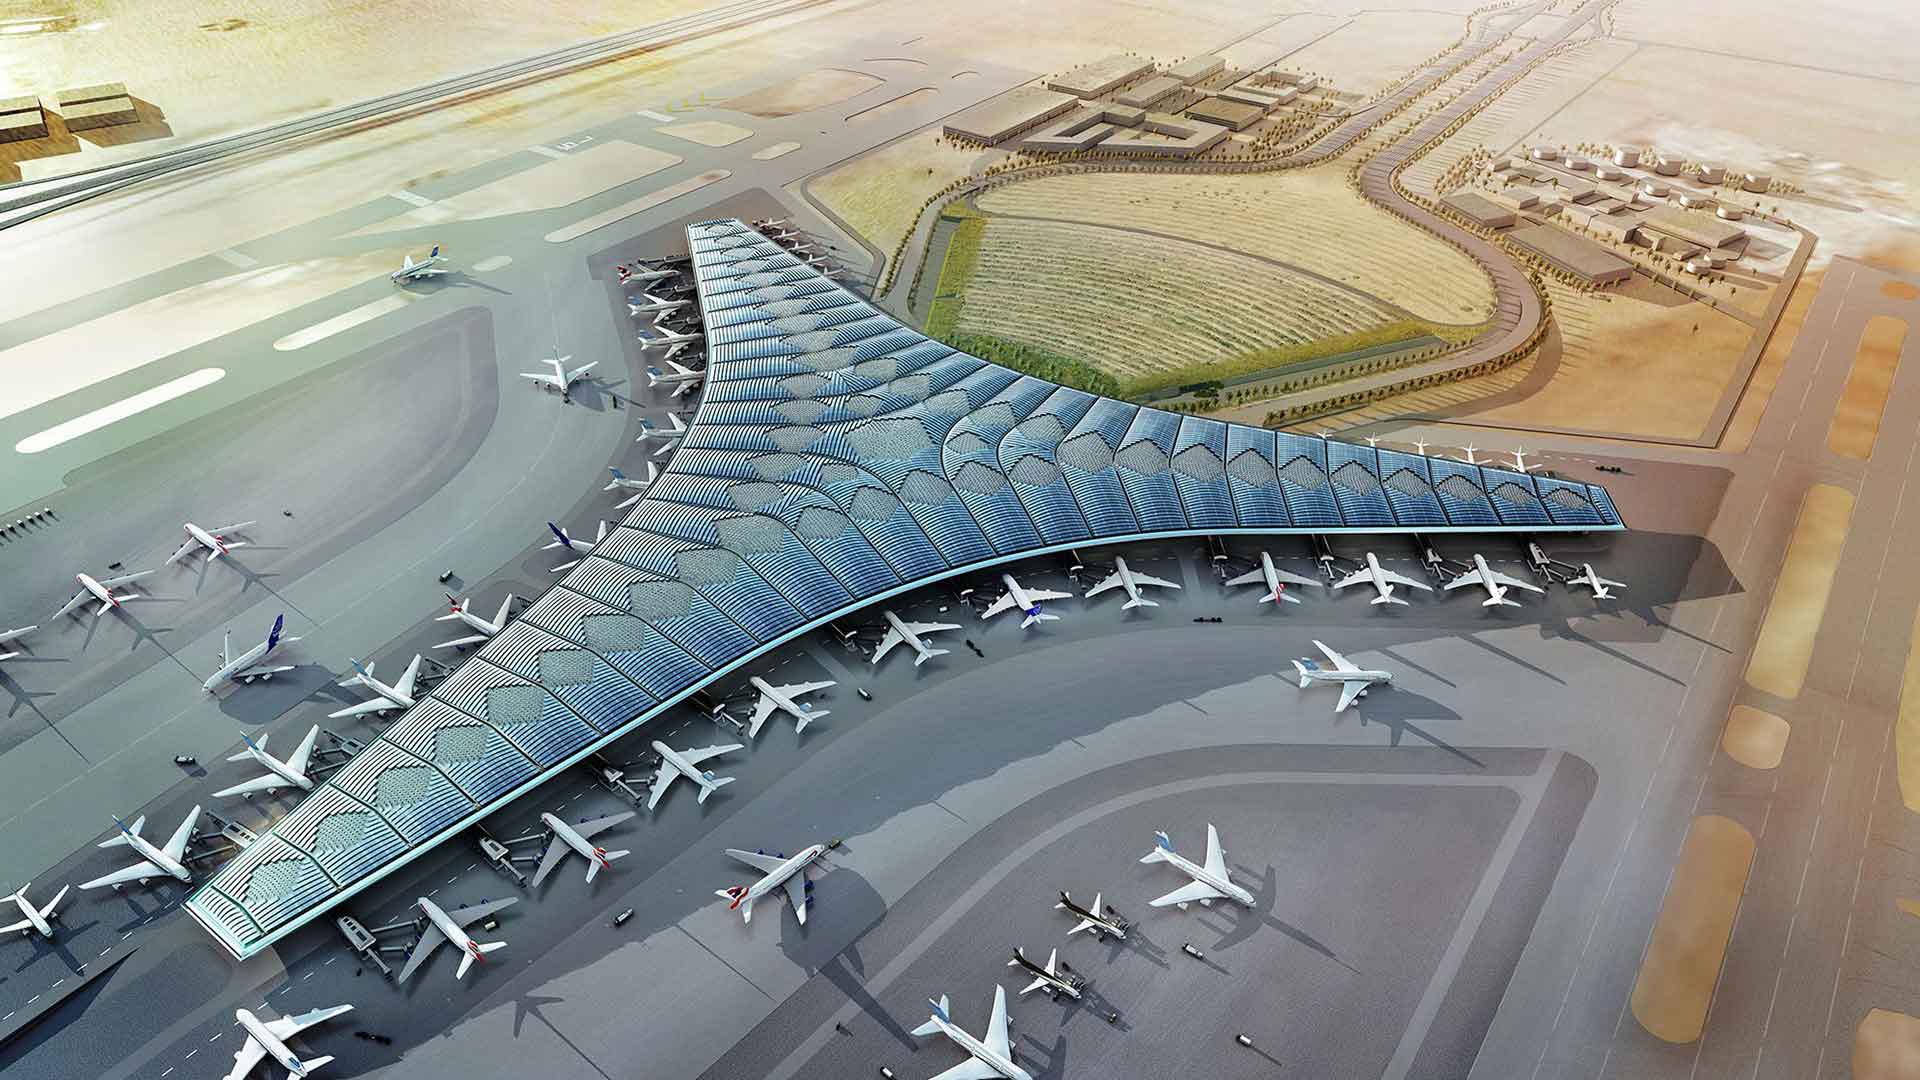 El Aeropuerto Internacional de Kuwait es un aeropuerto ubicado en Farwaniya, Kuwait, 15,5 km (9,6 millas) al sur de la ciudad de Kuwait, con una superficie de 37,7 kilómetros cuadrados (14,6 millas cuadradas).Es el centro de las aerolíneas Al Jazeera y Kuwait.